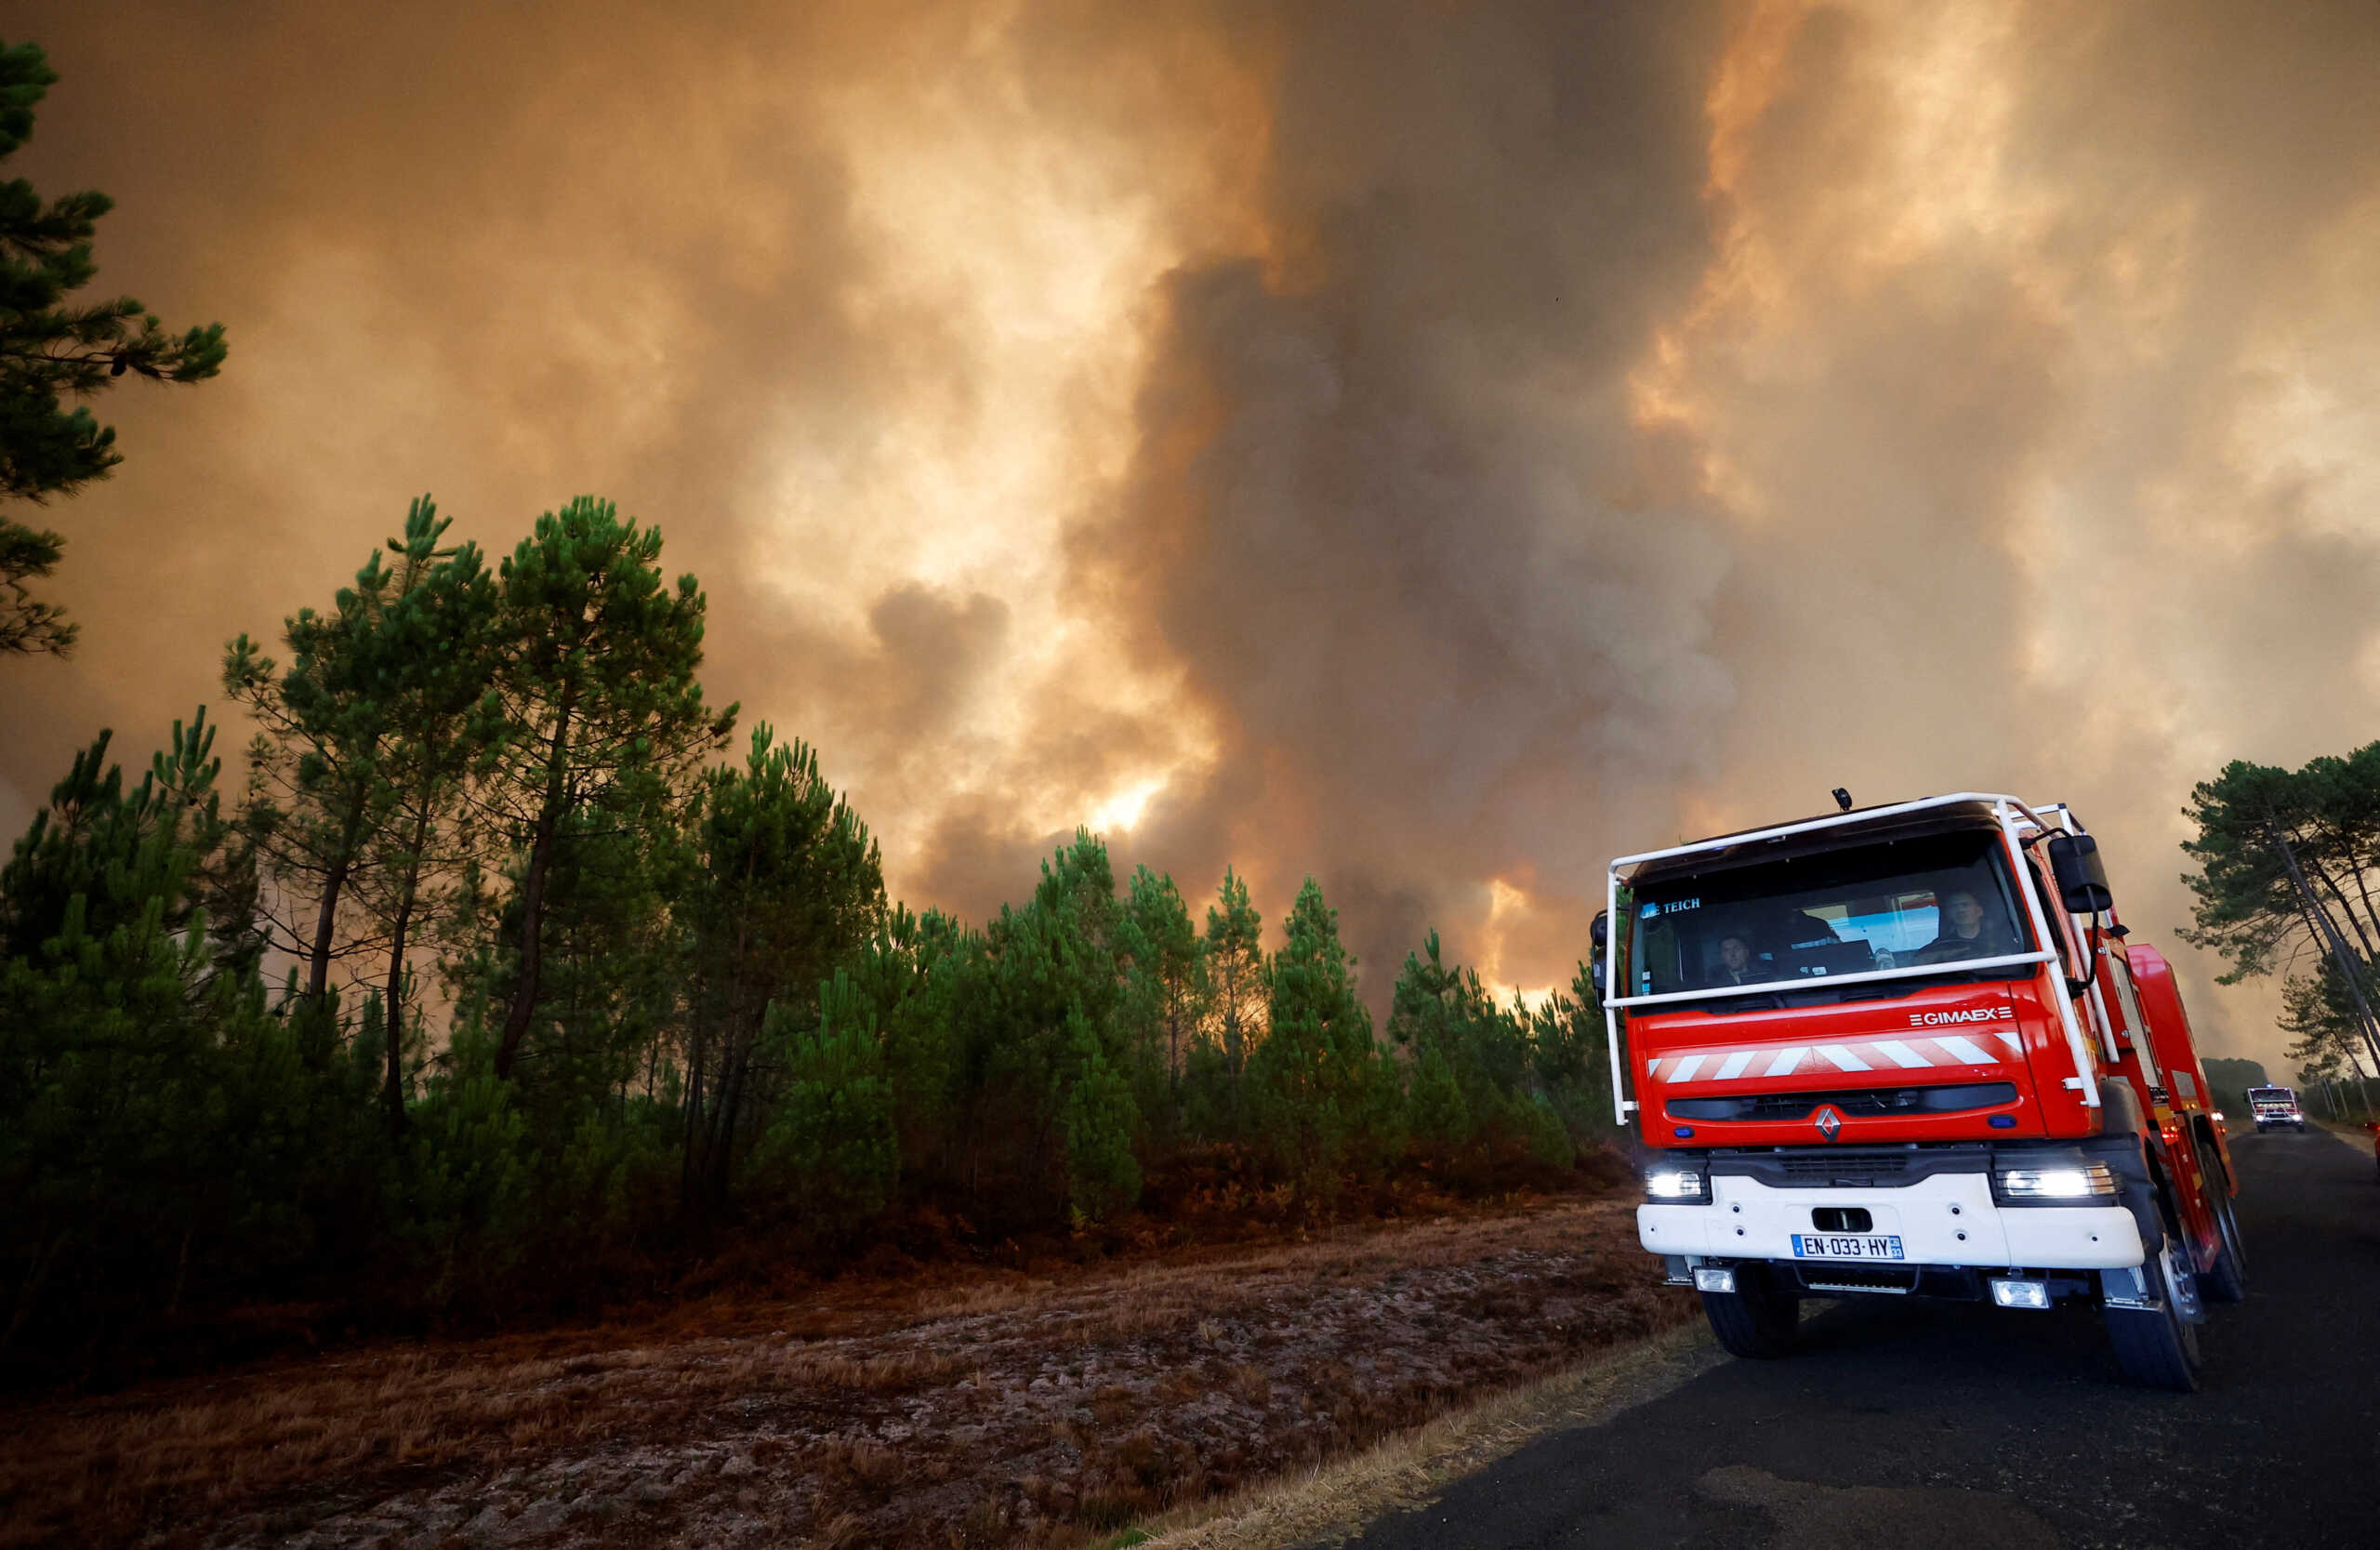 Μέσα σε 6 χρόνια έχουν καταγραφεί οι 3 χειρότερες περίοδοι δασικών πυρκαγιών όλων των εποχών